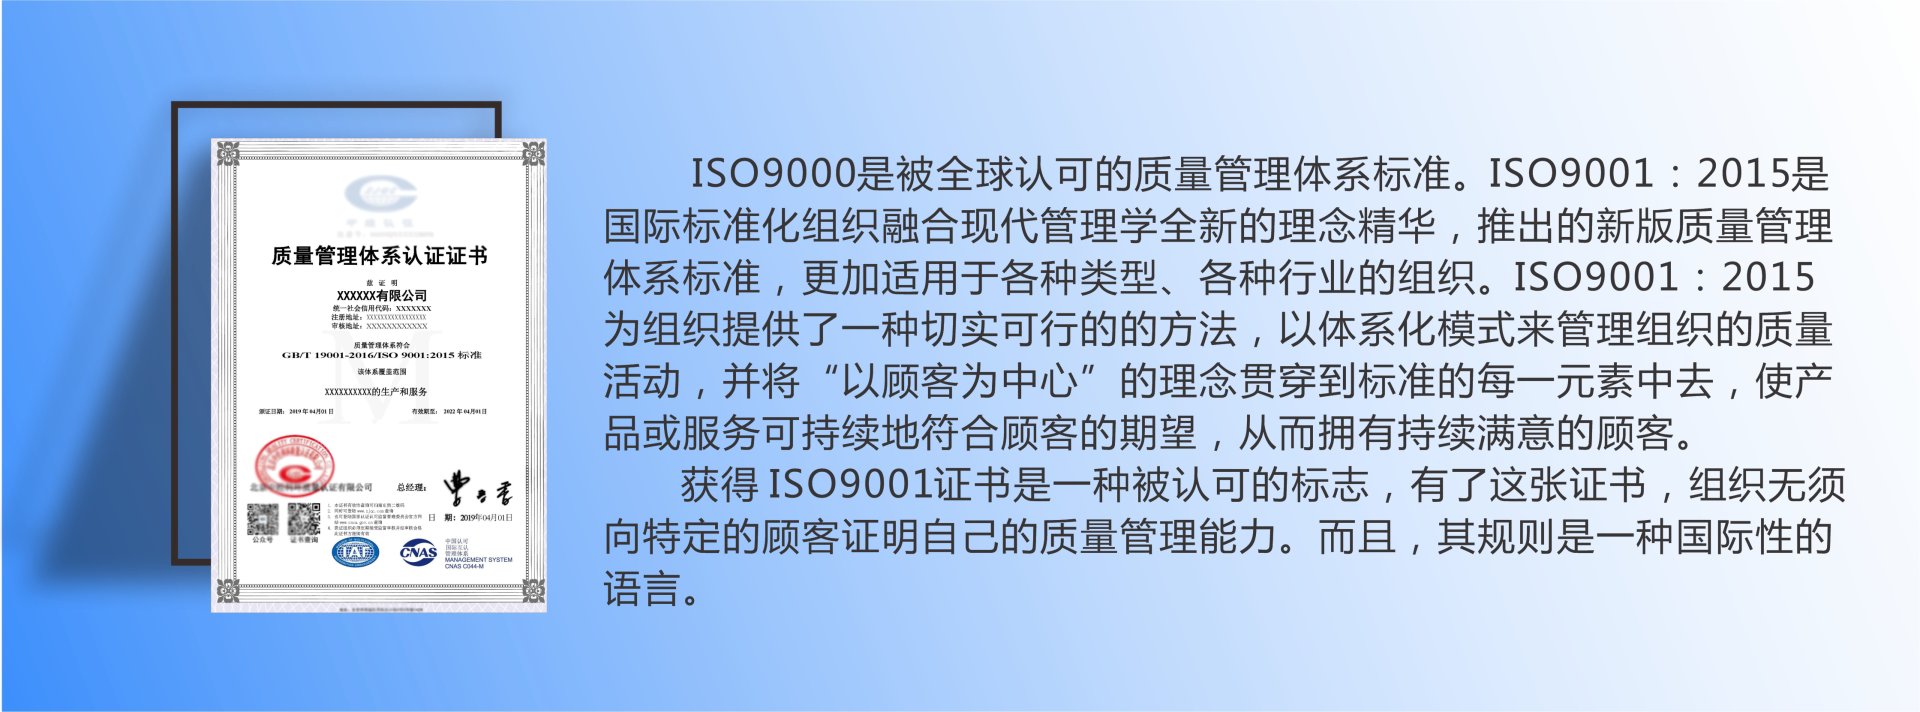 犀浦iso9001认证咨询收费  iso9001费用  认证咨询iso9001 iso质量认证价格示例图2